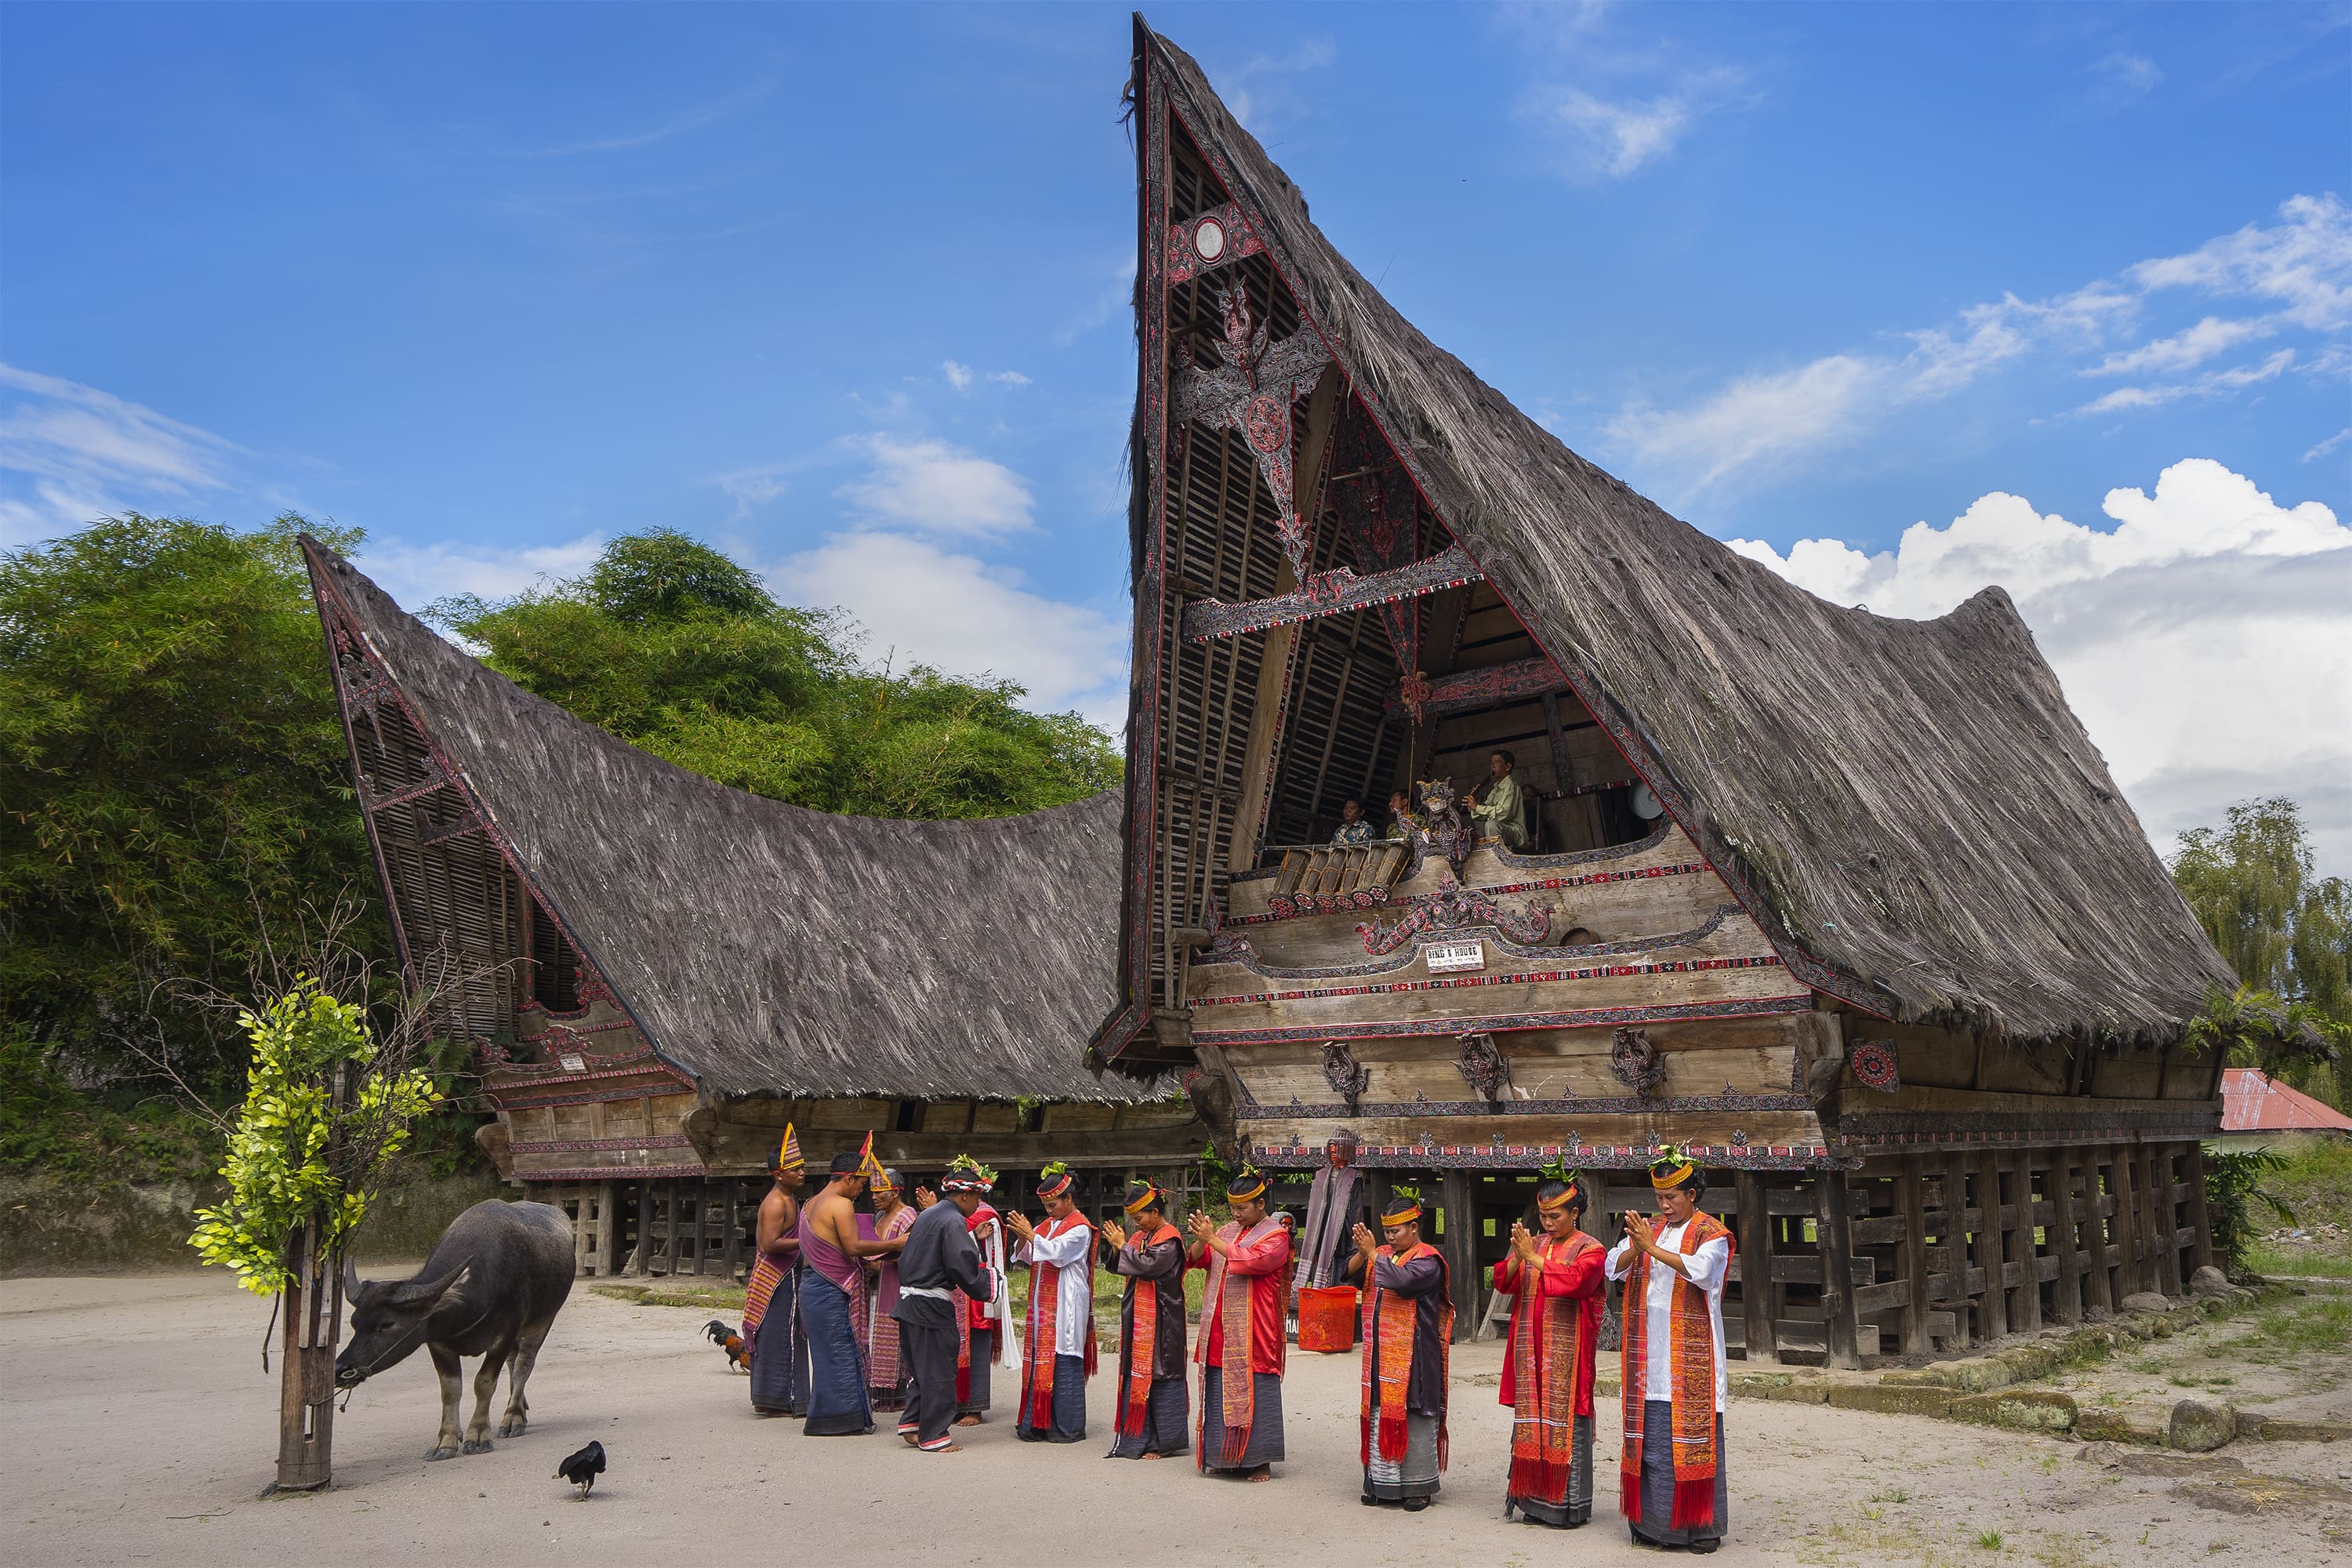 Rumah Adat Bolon Khas Suku Batak yang dahulu menjadi hunian raja raja Batak